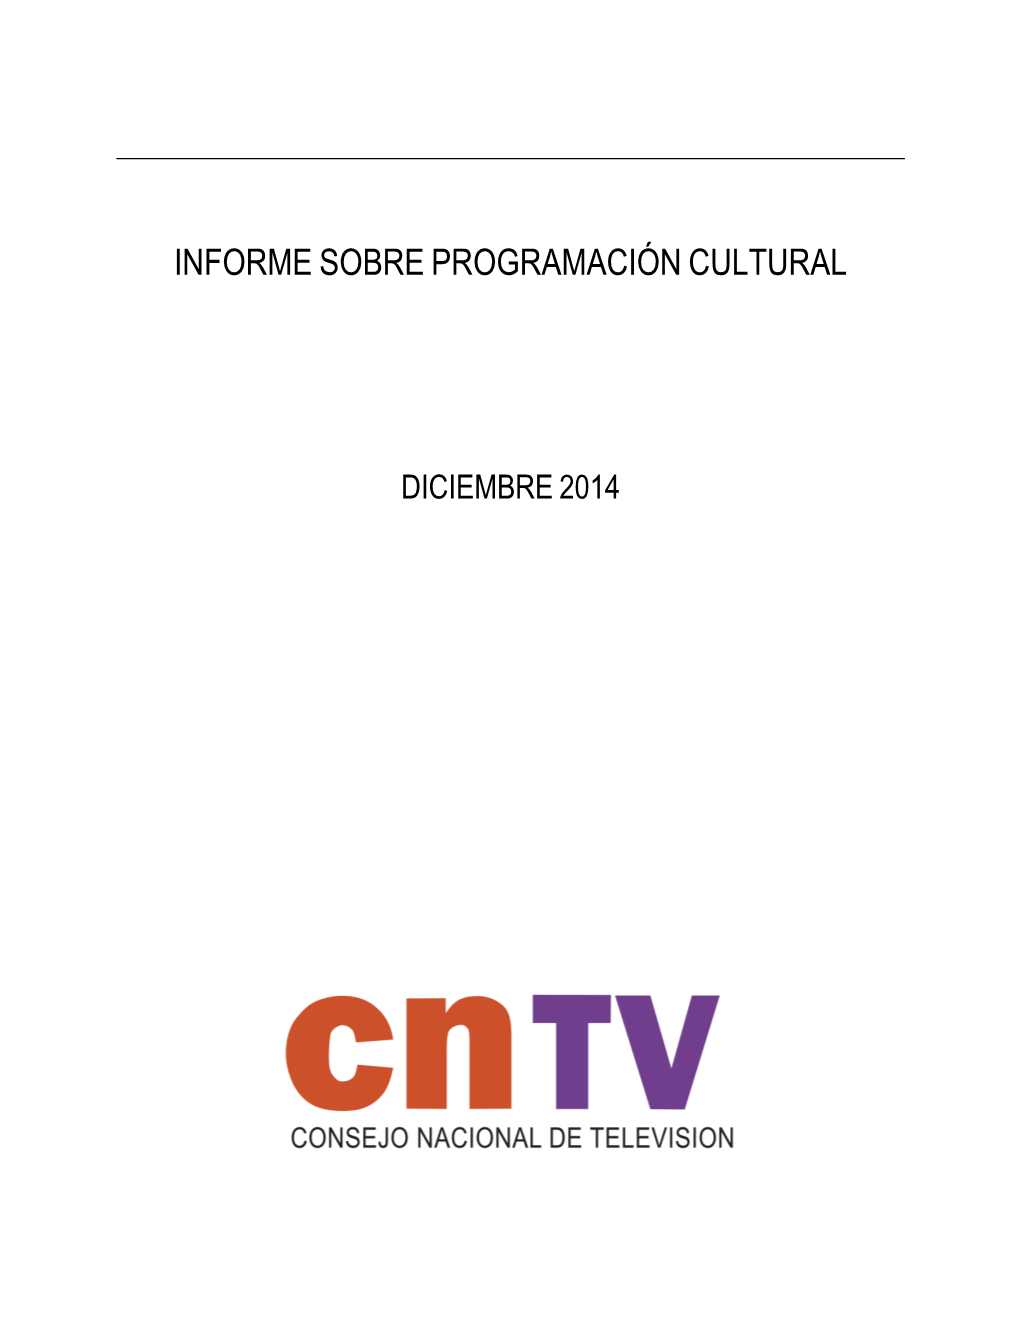 Informe De Programación Cultural – Diciembre 2014